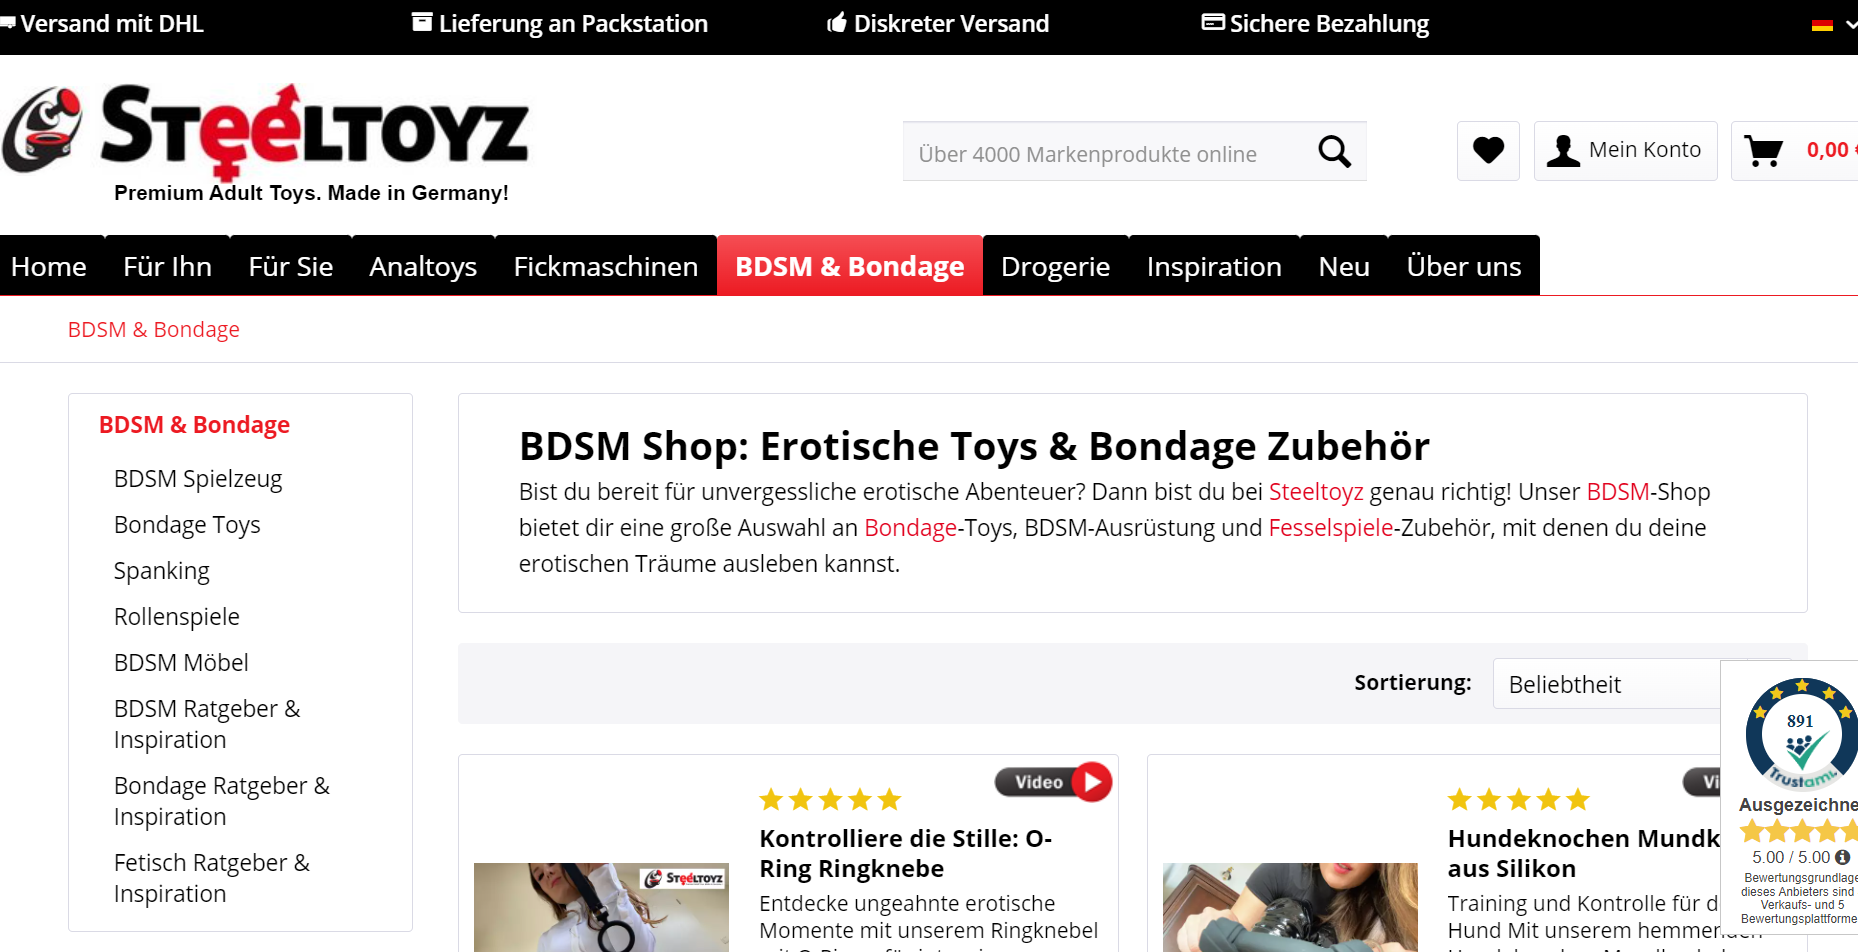 Steeltoyz - Der beste Shop für "härtere" BDSM-Spielzeuge